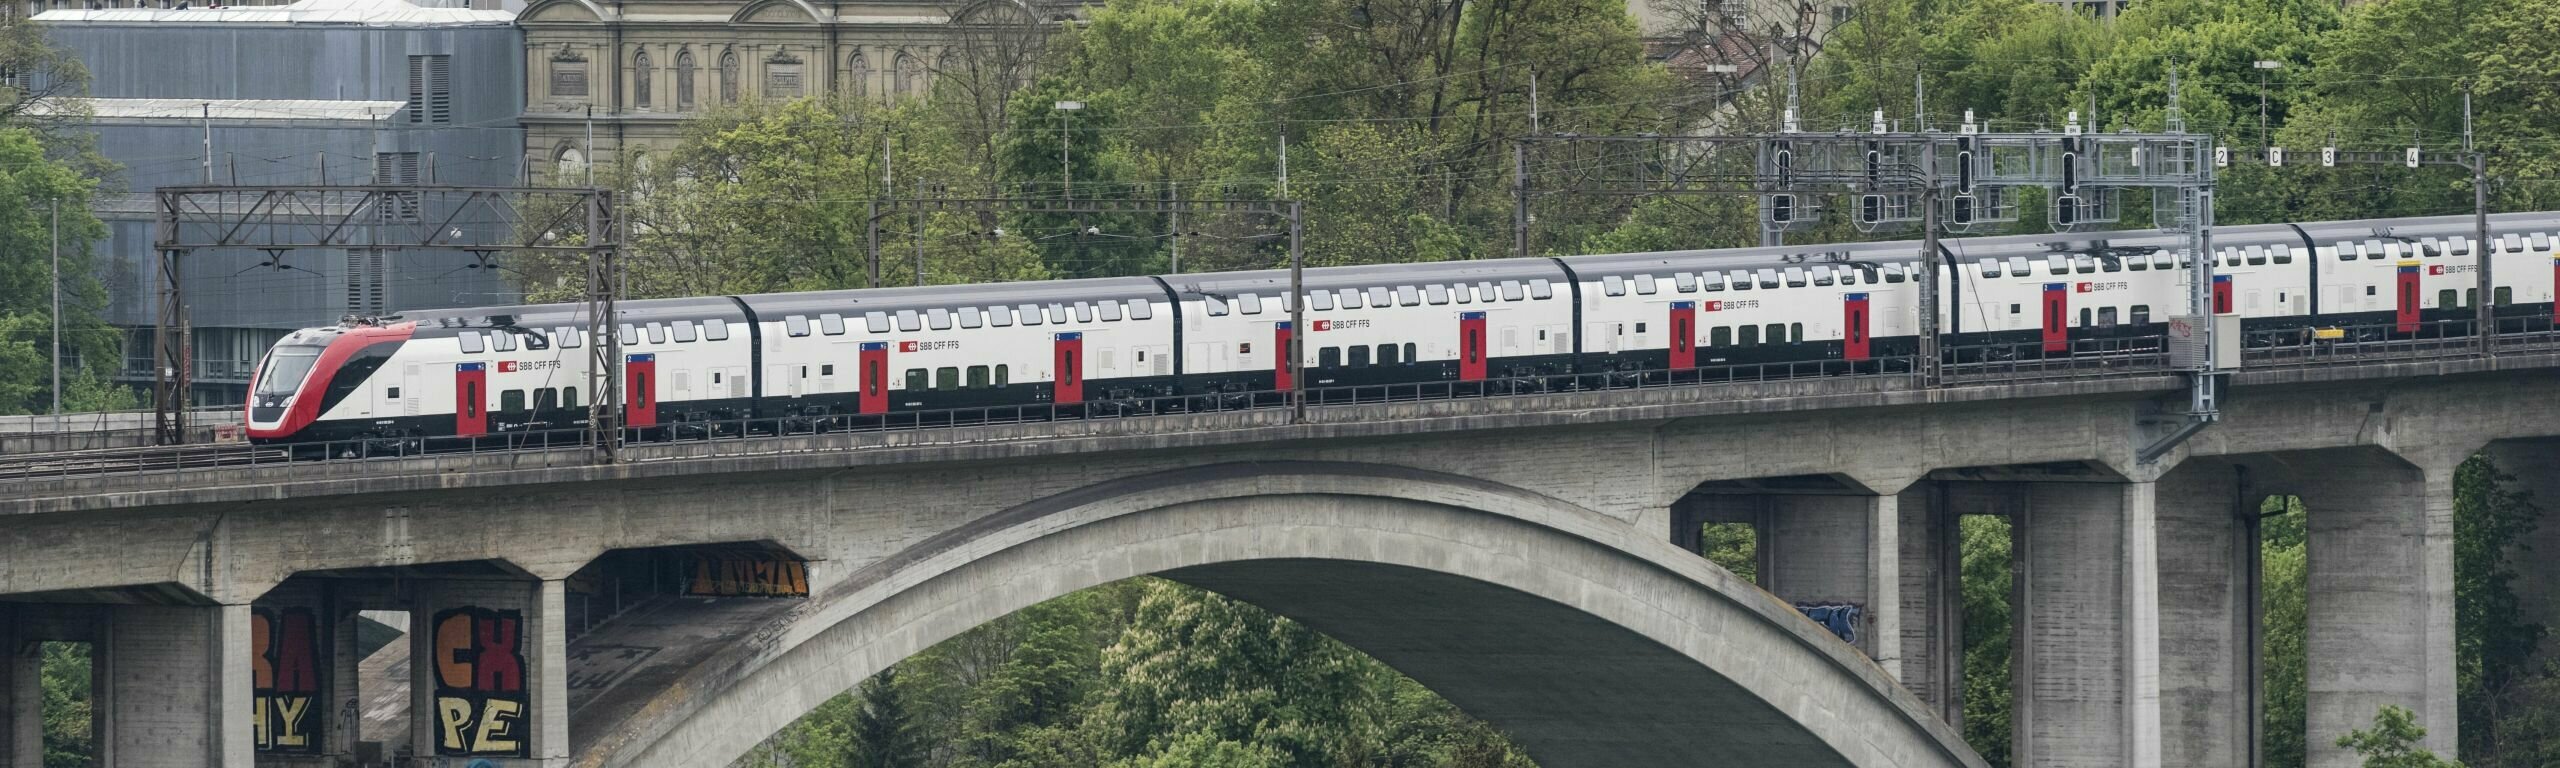 Treno diretto alla stazione di Berna con il Palazzo federale sullo sfo